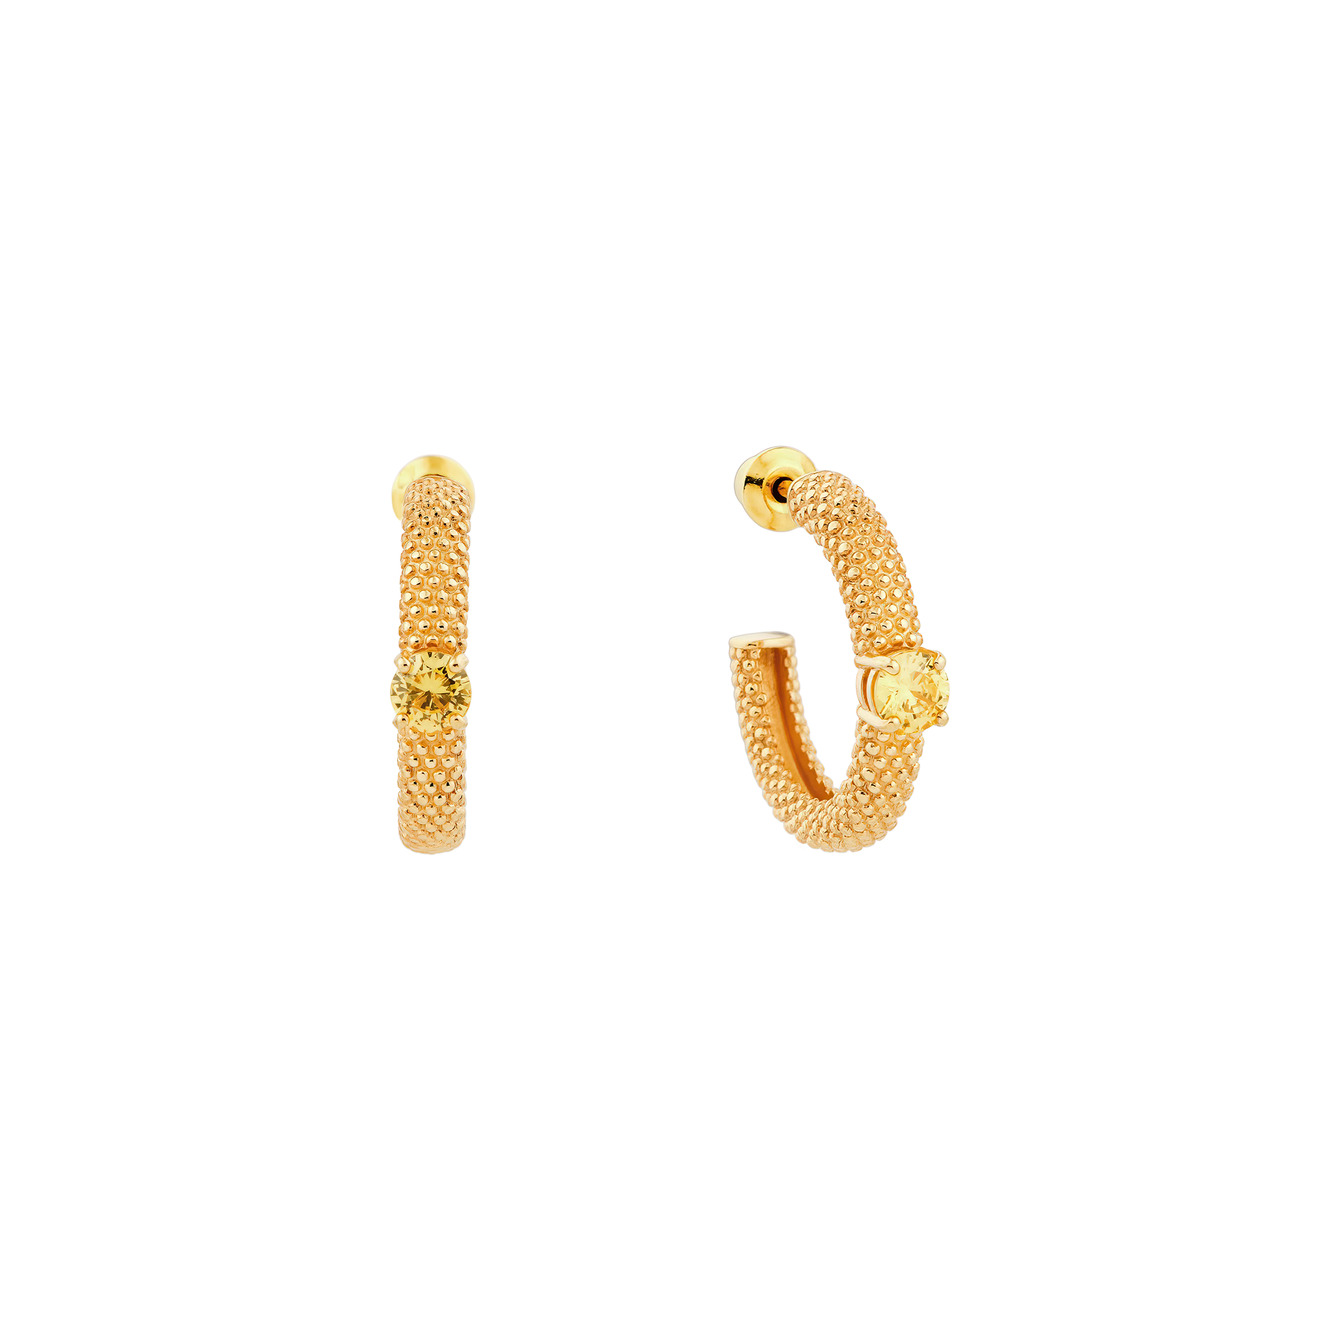 35 02 асимметричные золотые серьги в виде стрелы с желтым кристаллом KRASHE jewellery Позолоченные серьги-кольца «Золотые мурашки» с желтым фианитом